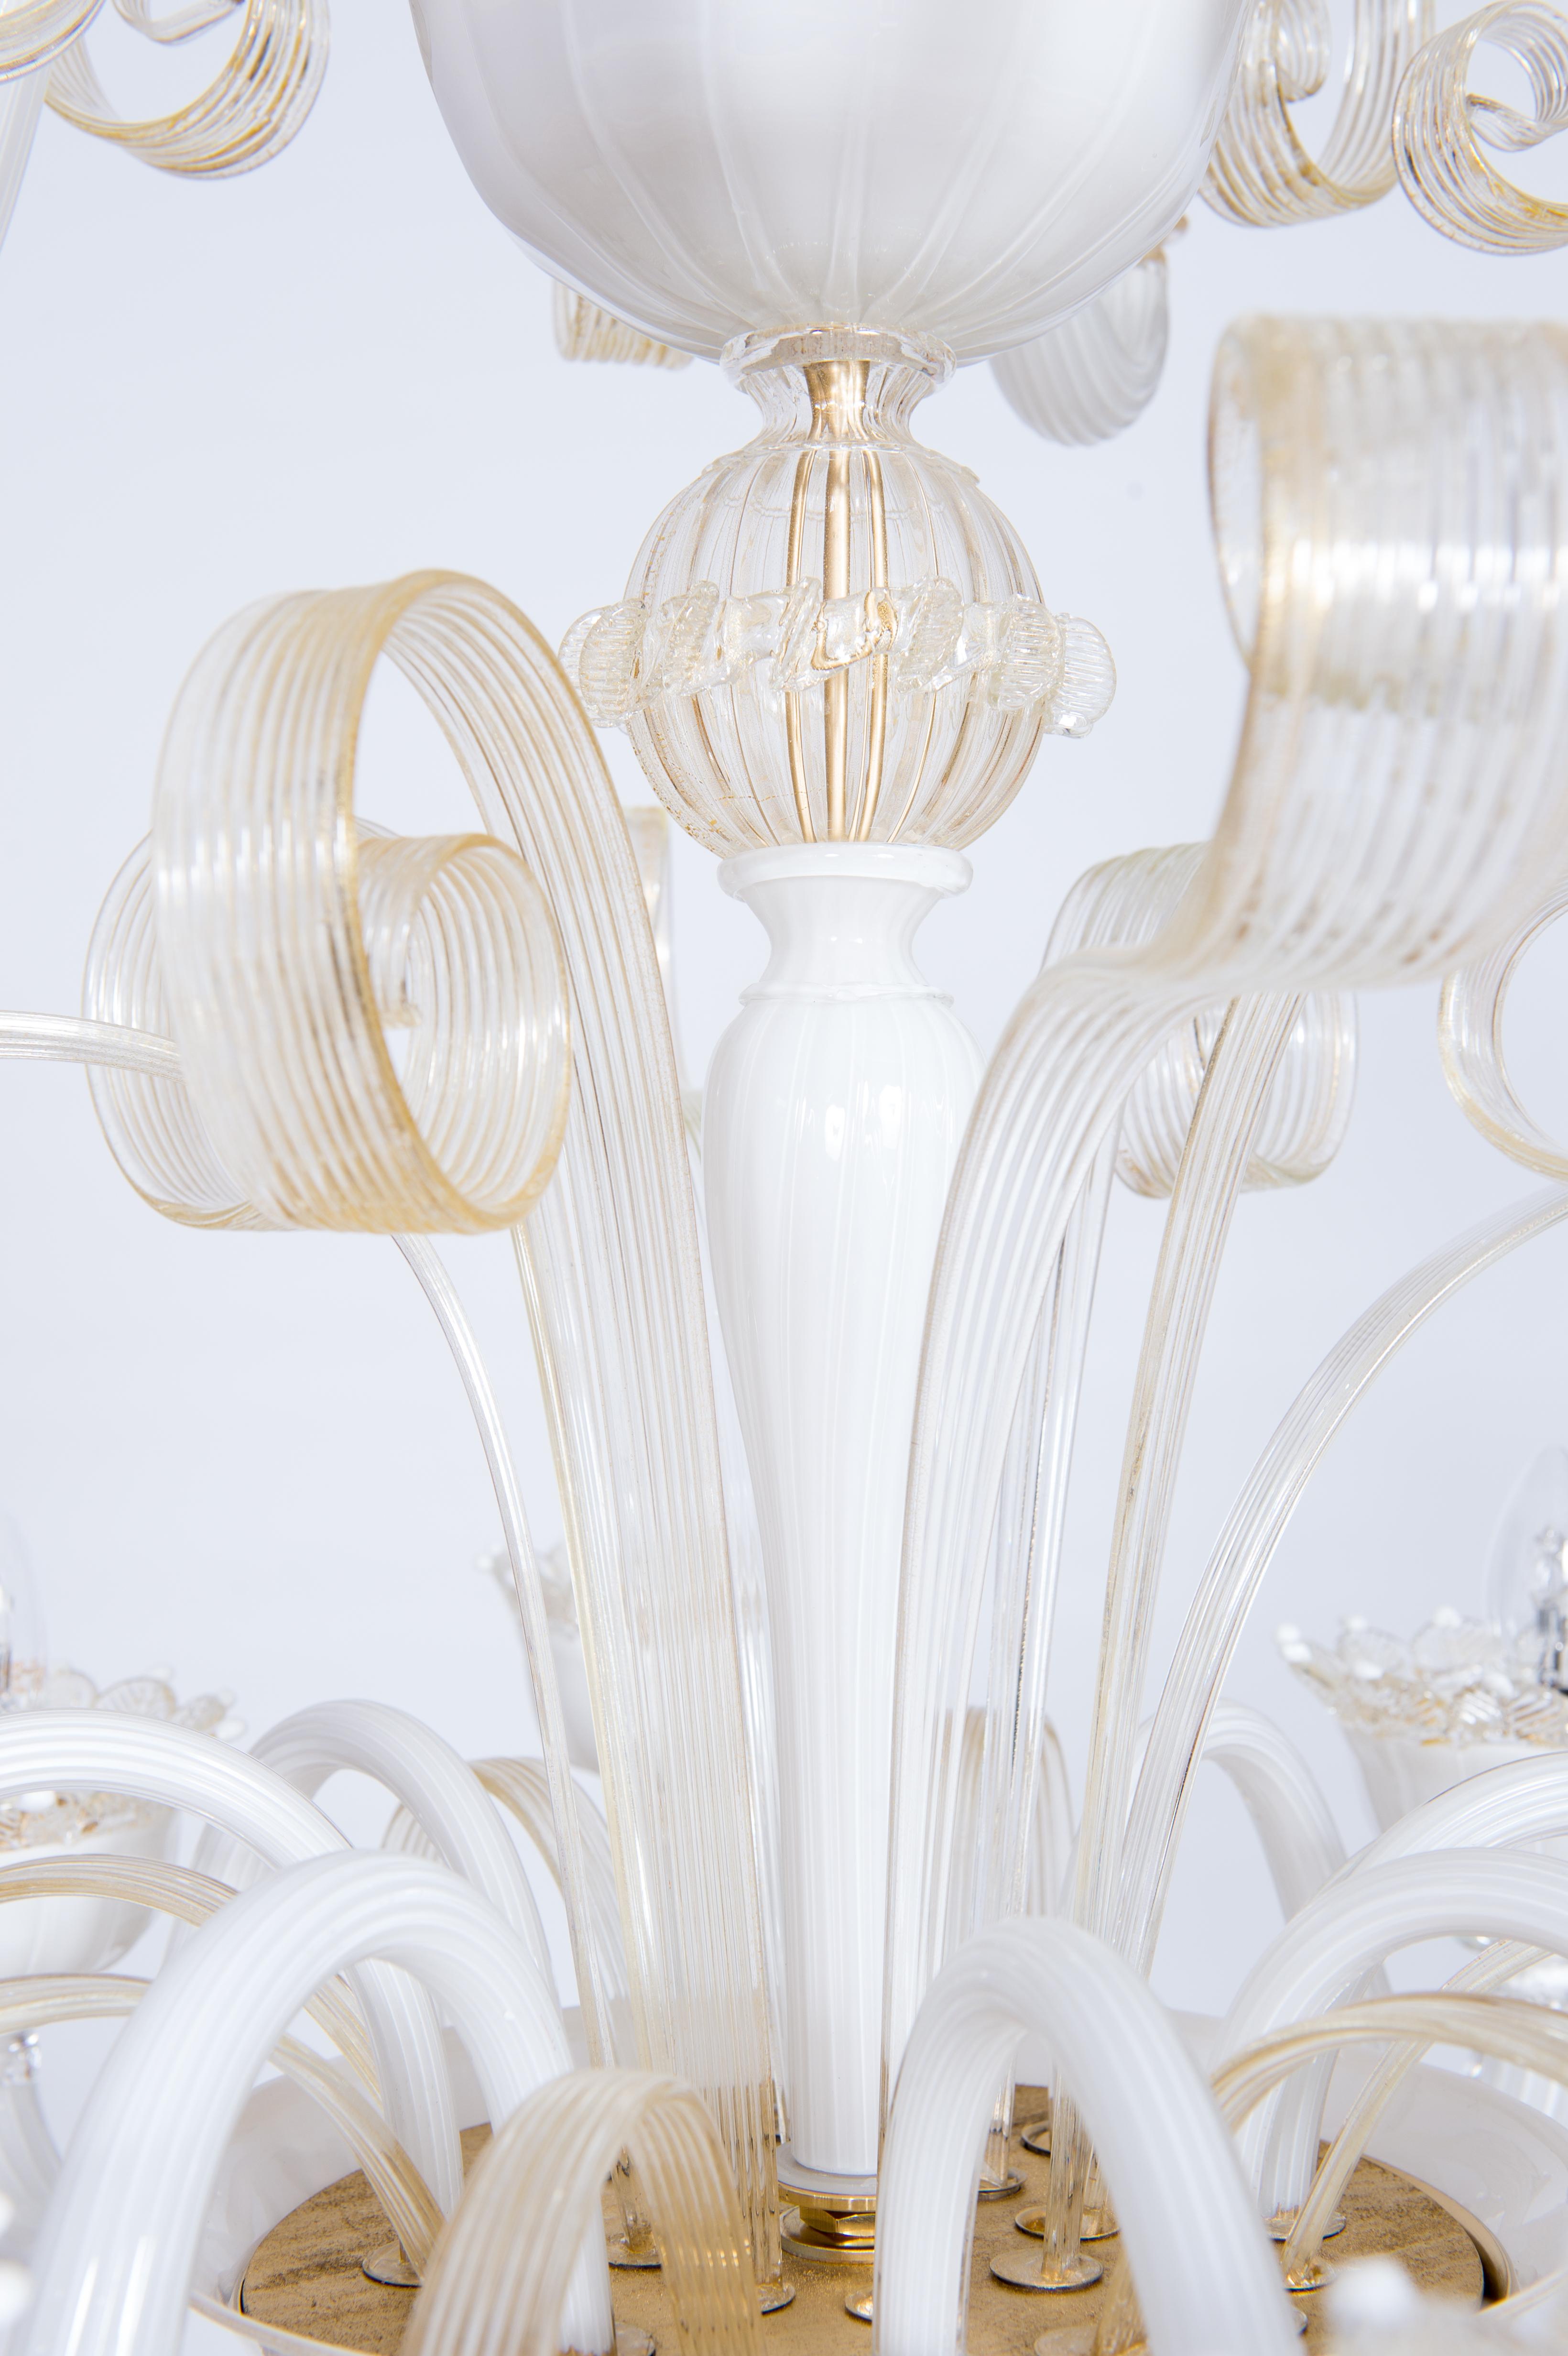 Contemporary White-Milk Murano Glass Chandelier with Gold Accents Giovanni Dalla Fina Italy For Sale